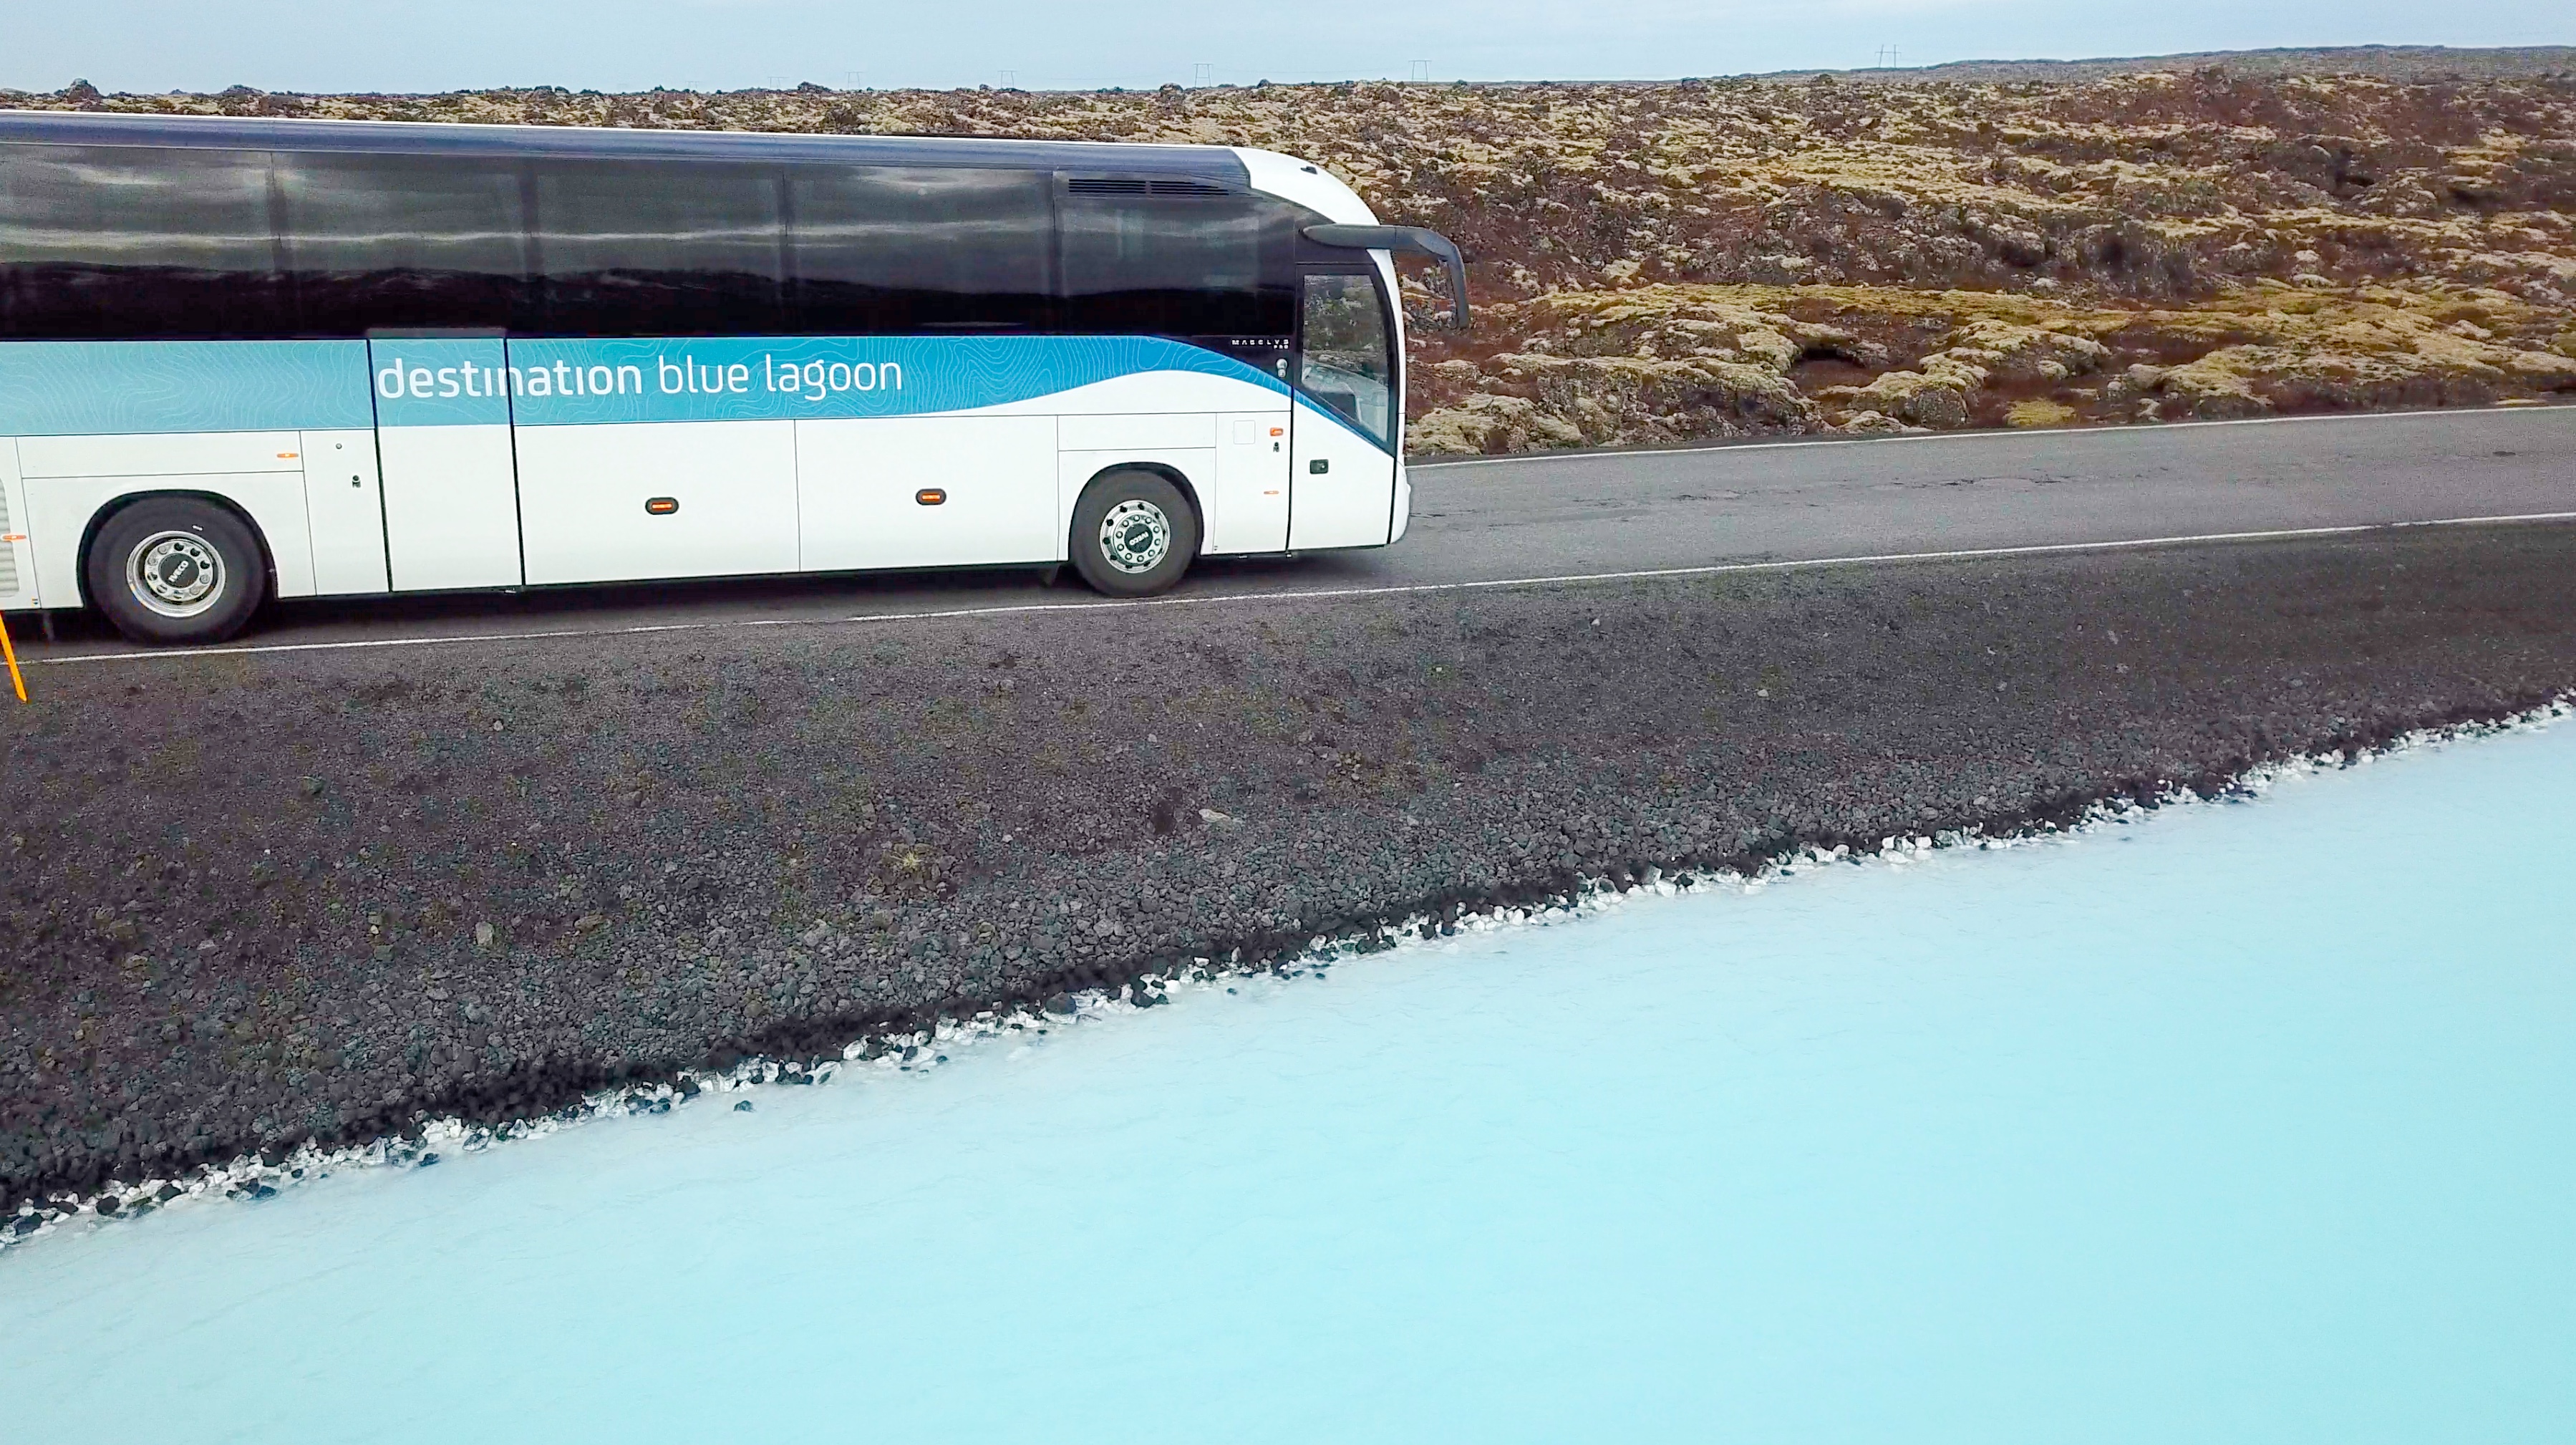 Bei einem Aufenthalt in Reykjavík bietet sich die kurze Fahrt zur Blauen Lagune an.